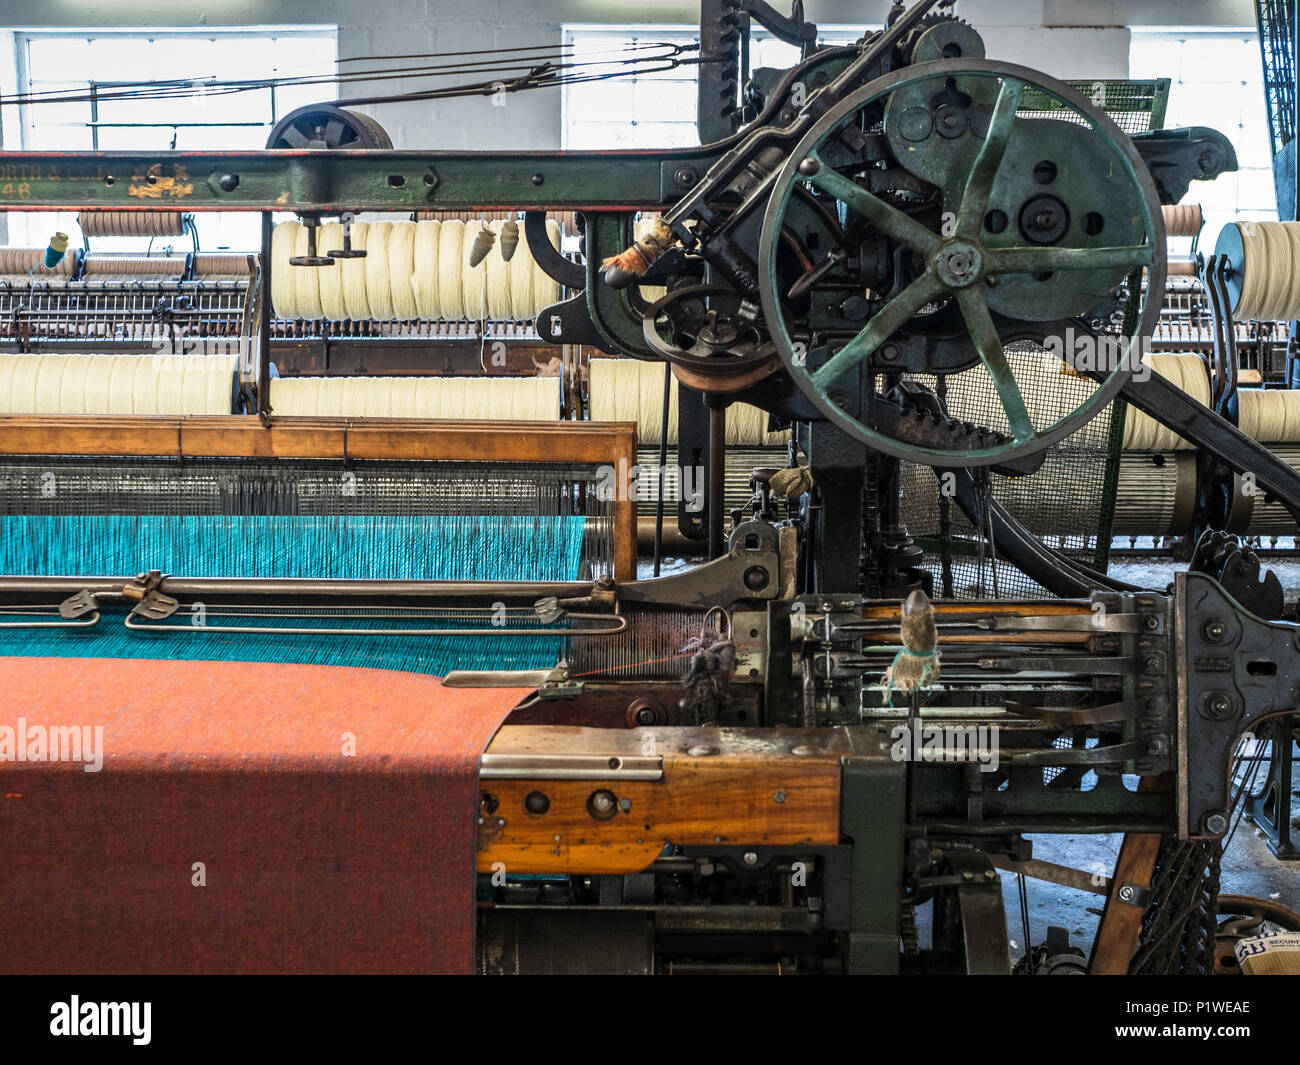 À Trefriw Woollen Mills N.Pays de Galles, l'un des derniers Woolen Mills toujours en production au pays de Galles. Connu pour le tissage traditionnel double-couvertures. Banque D'Images